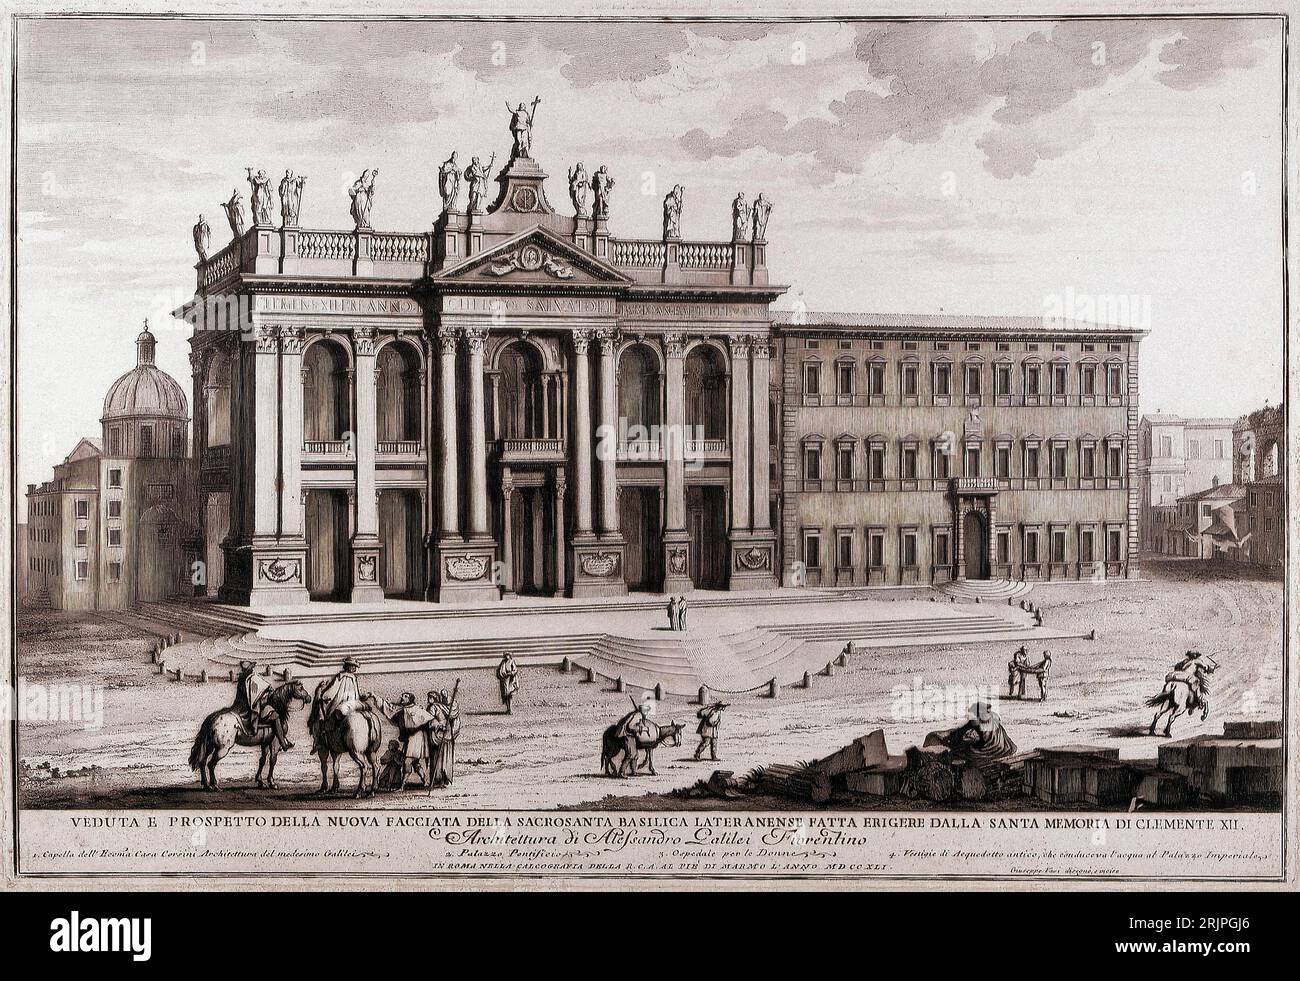 Italien Rom Blick und Anhebung der neuen Fassade der Lateranbasilika, die 1741 von der heiligen Erinnerung an Clemens XII. Errichtet wurde Stockfoto